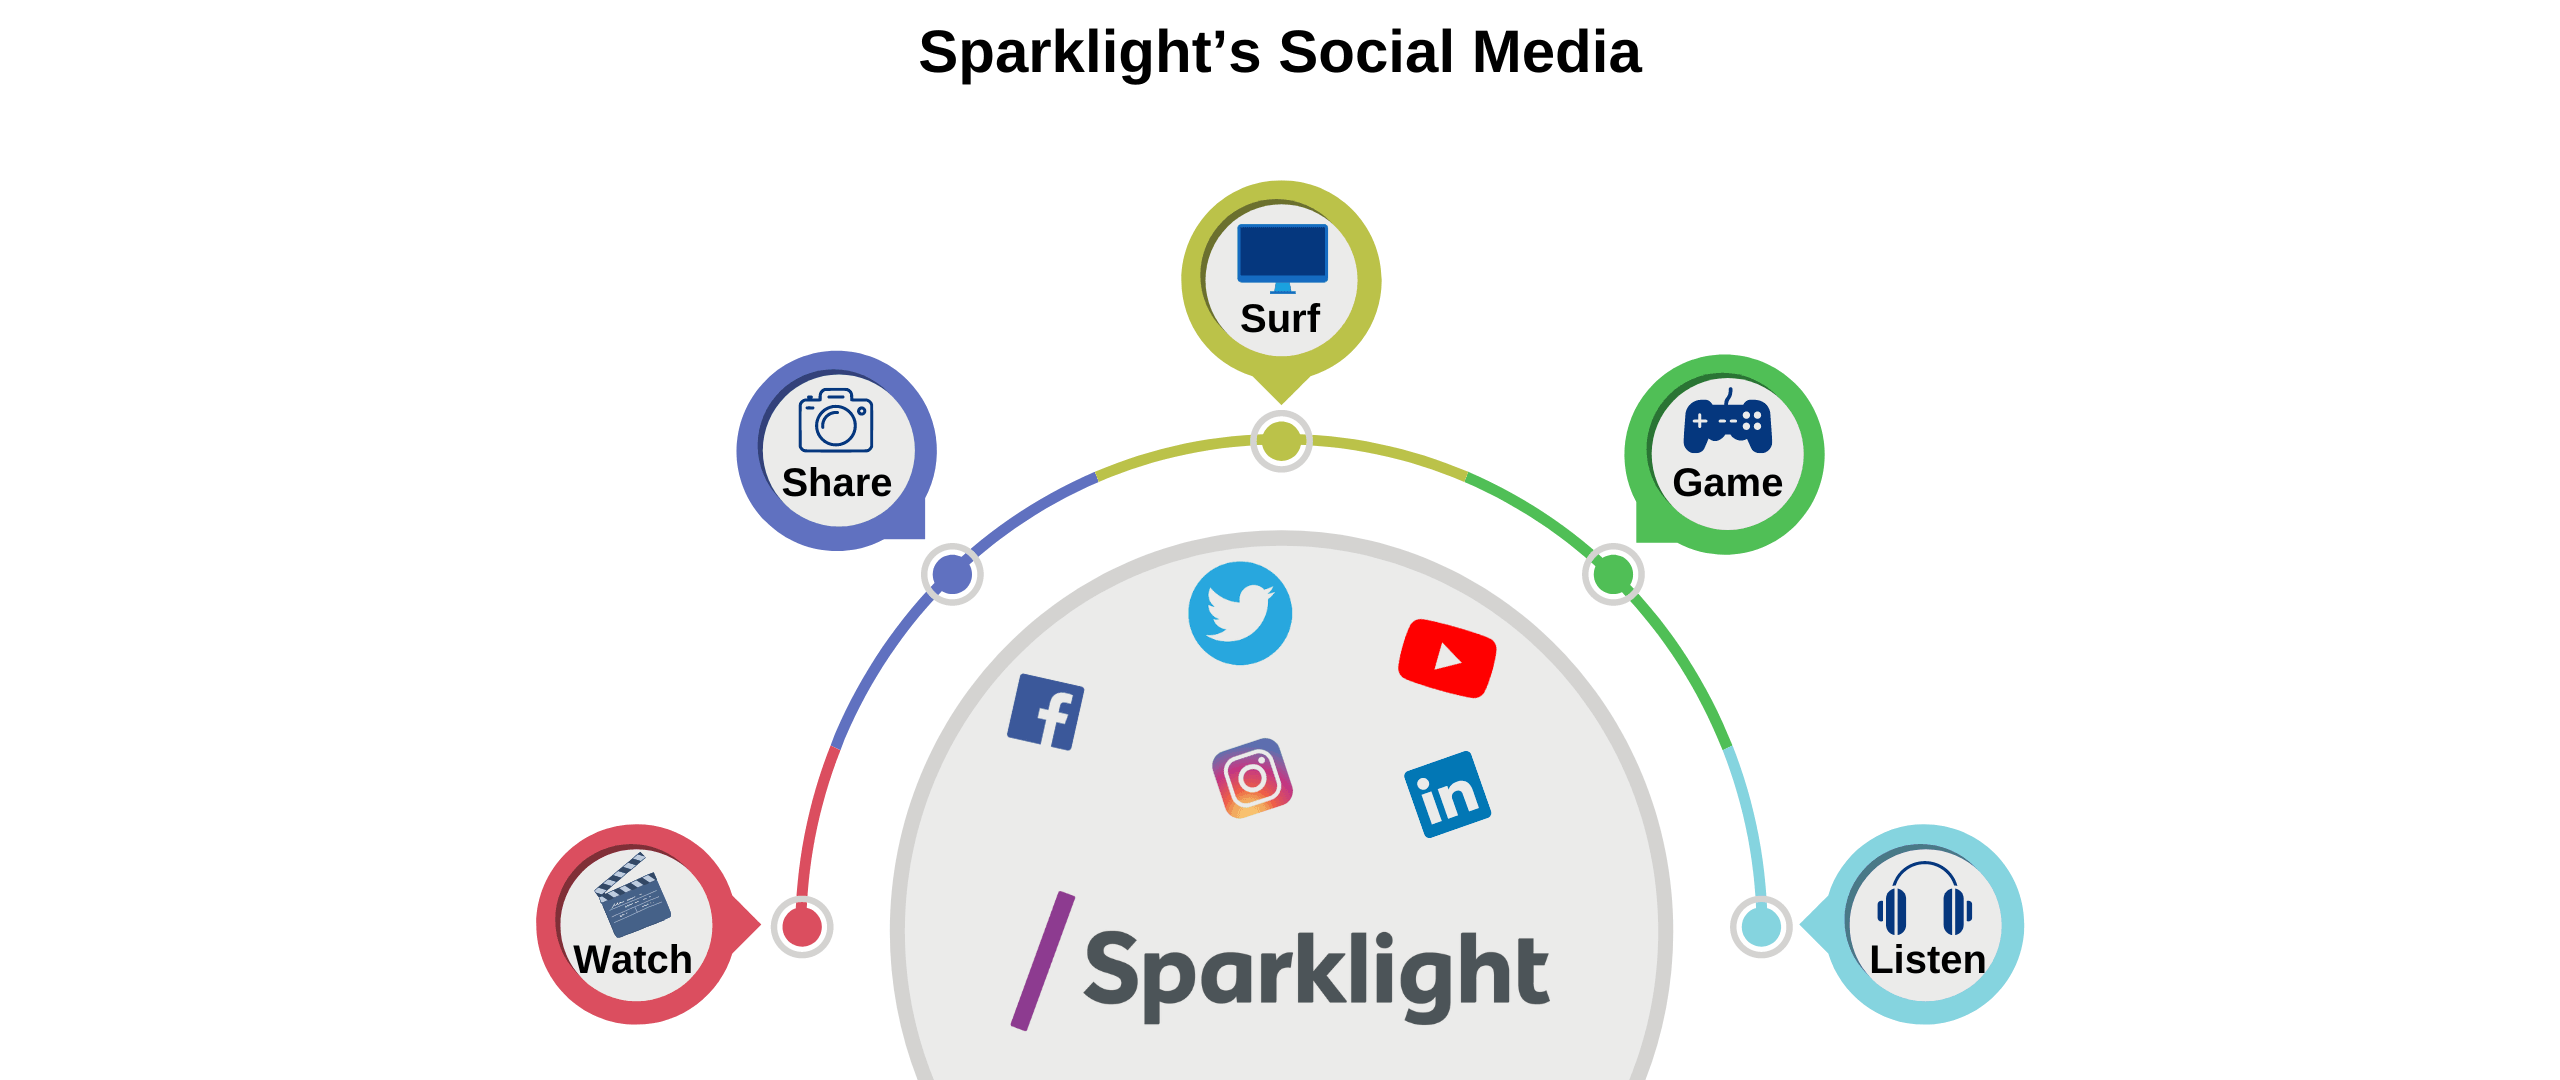 Sparklight's social media platforms